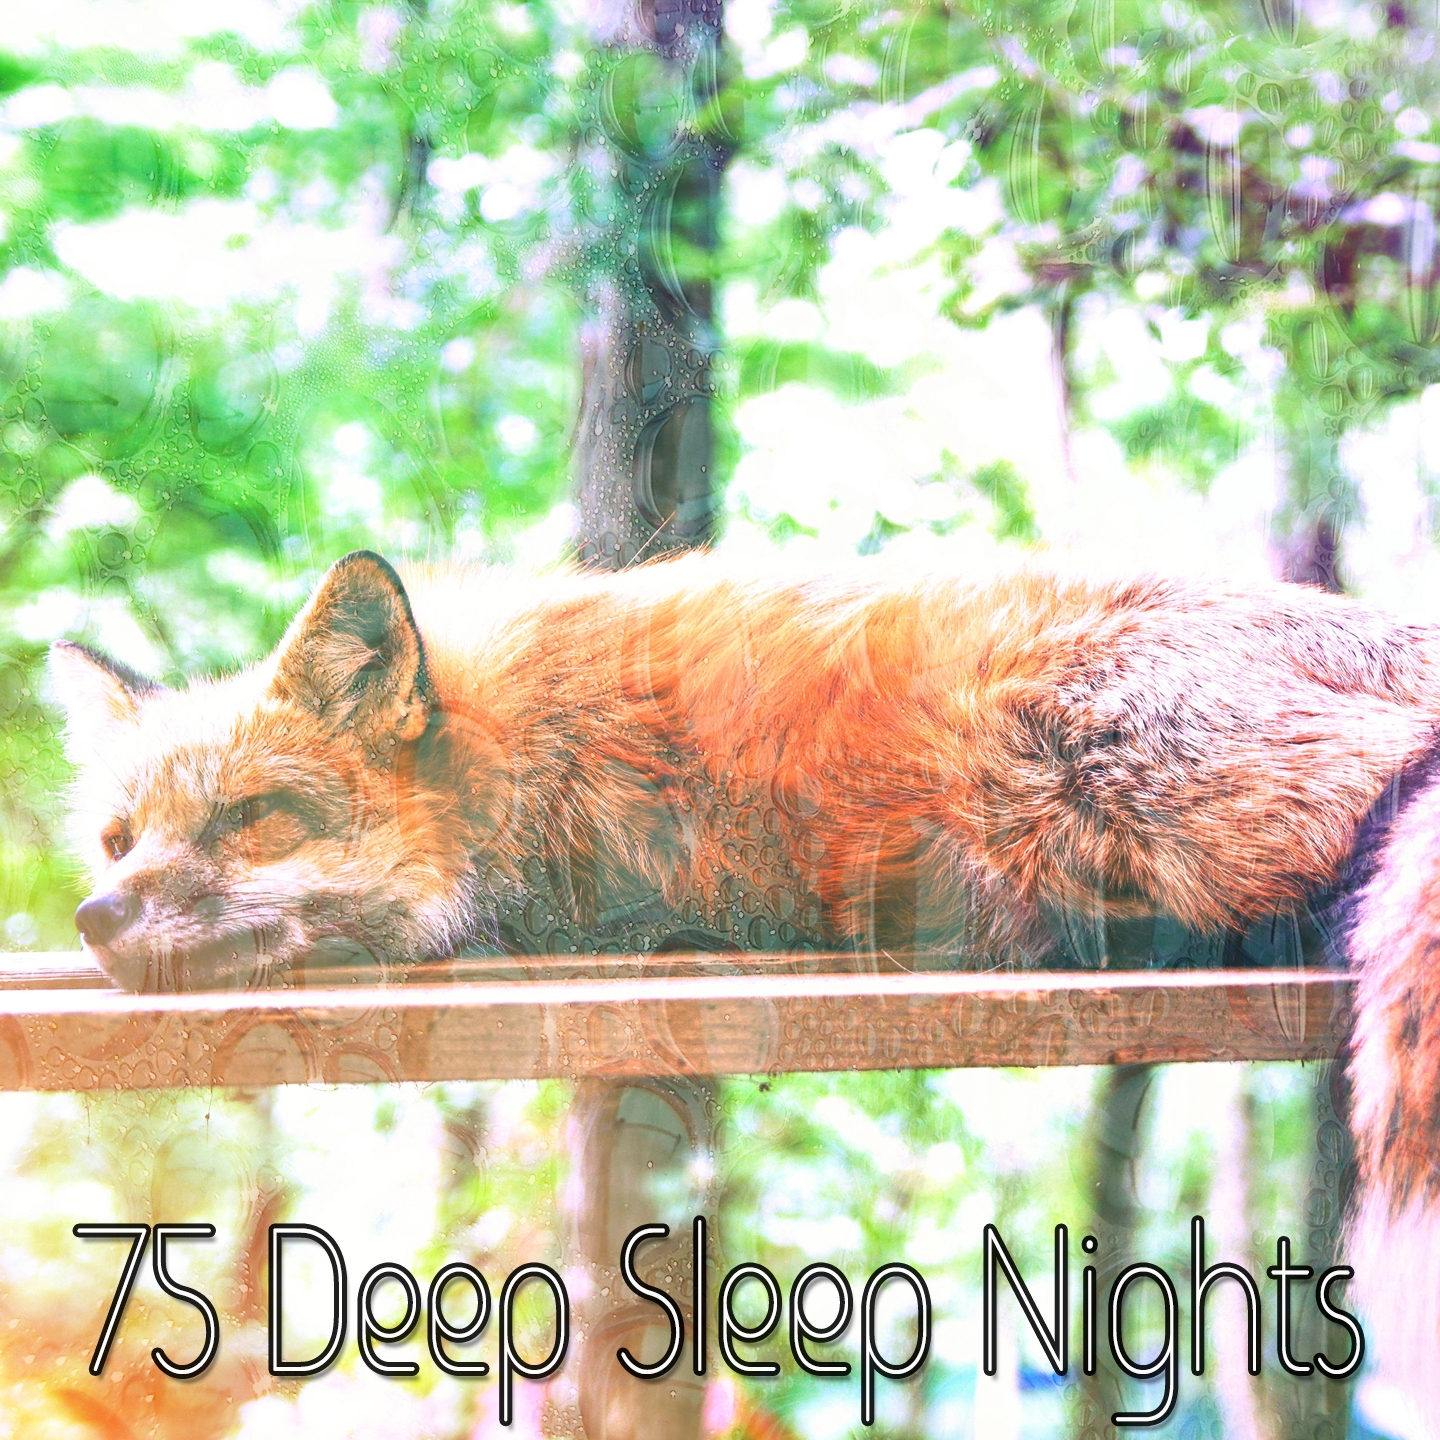 75 Deep Sleep Nights